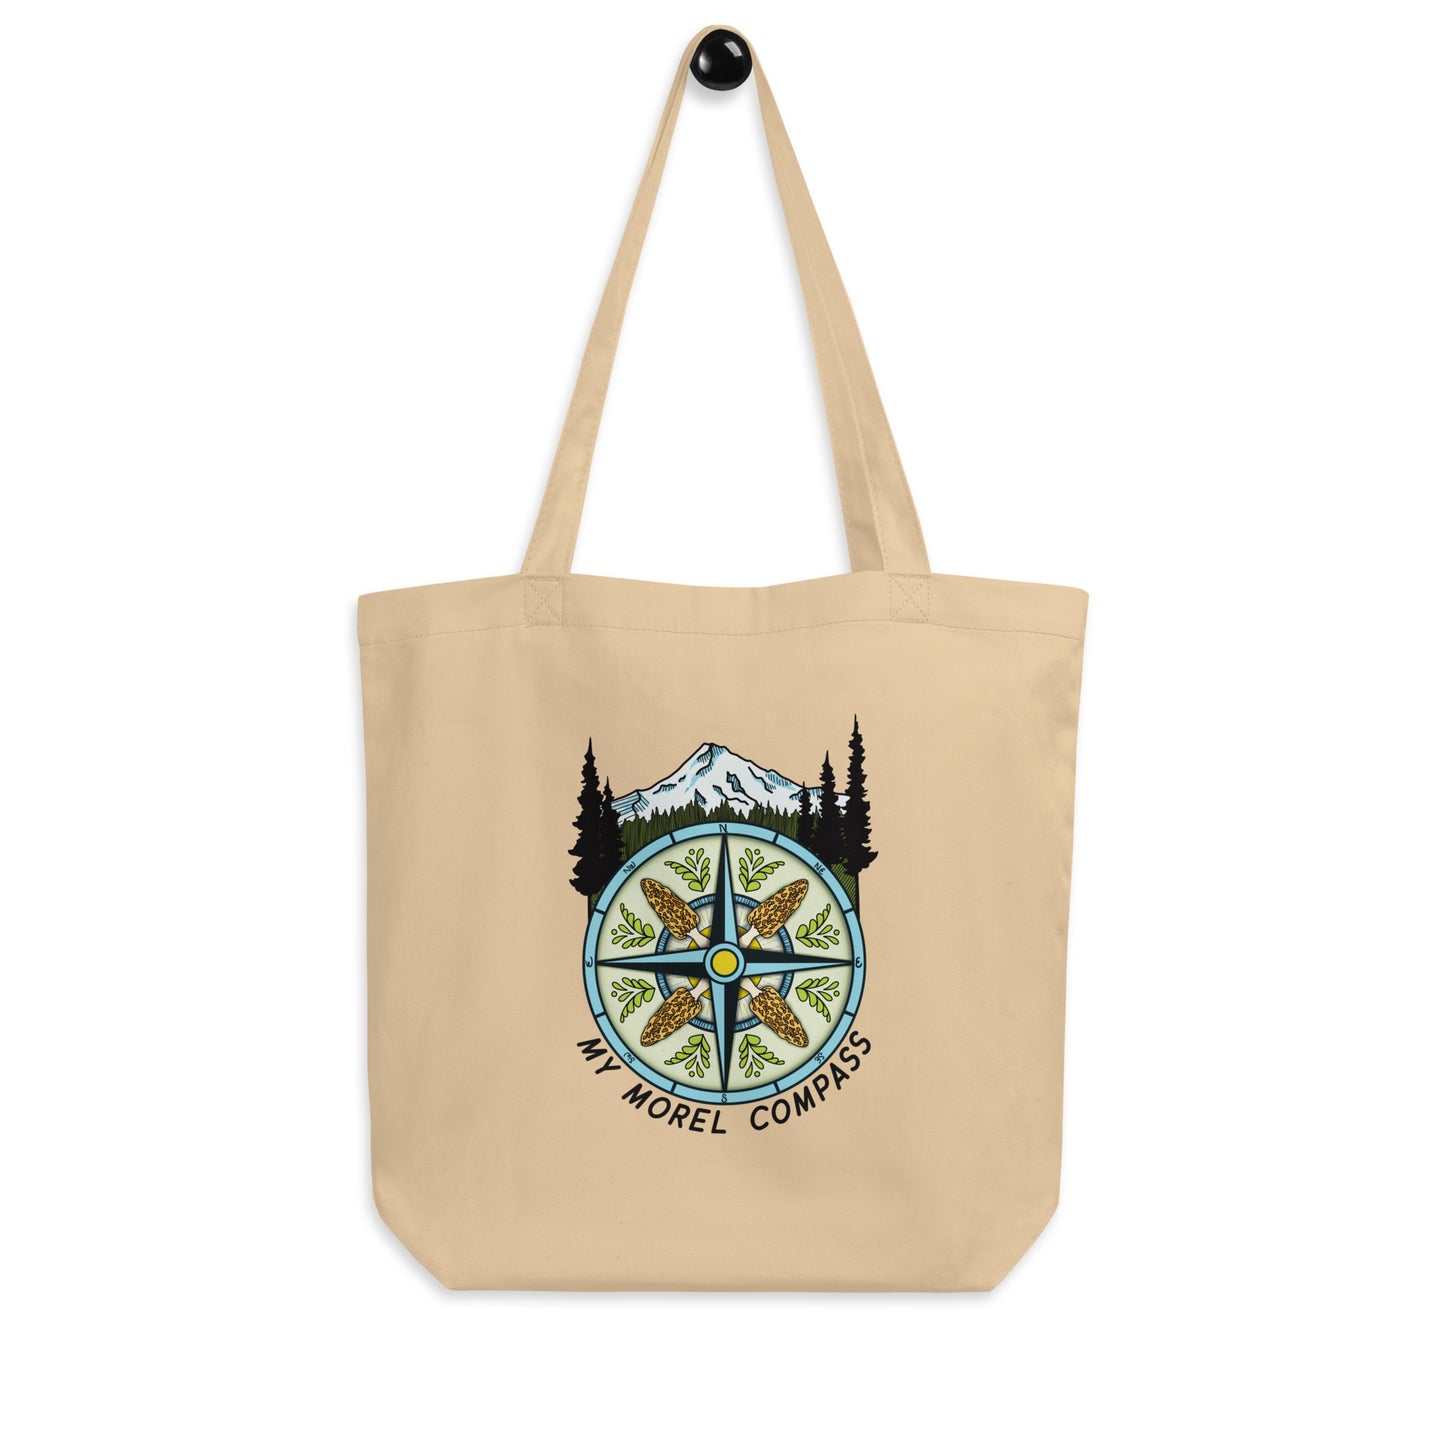 My Morel Compass | Eco Friendly Tote Bag | Funny Morel Mushroom Artwork